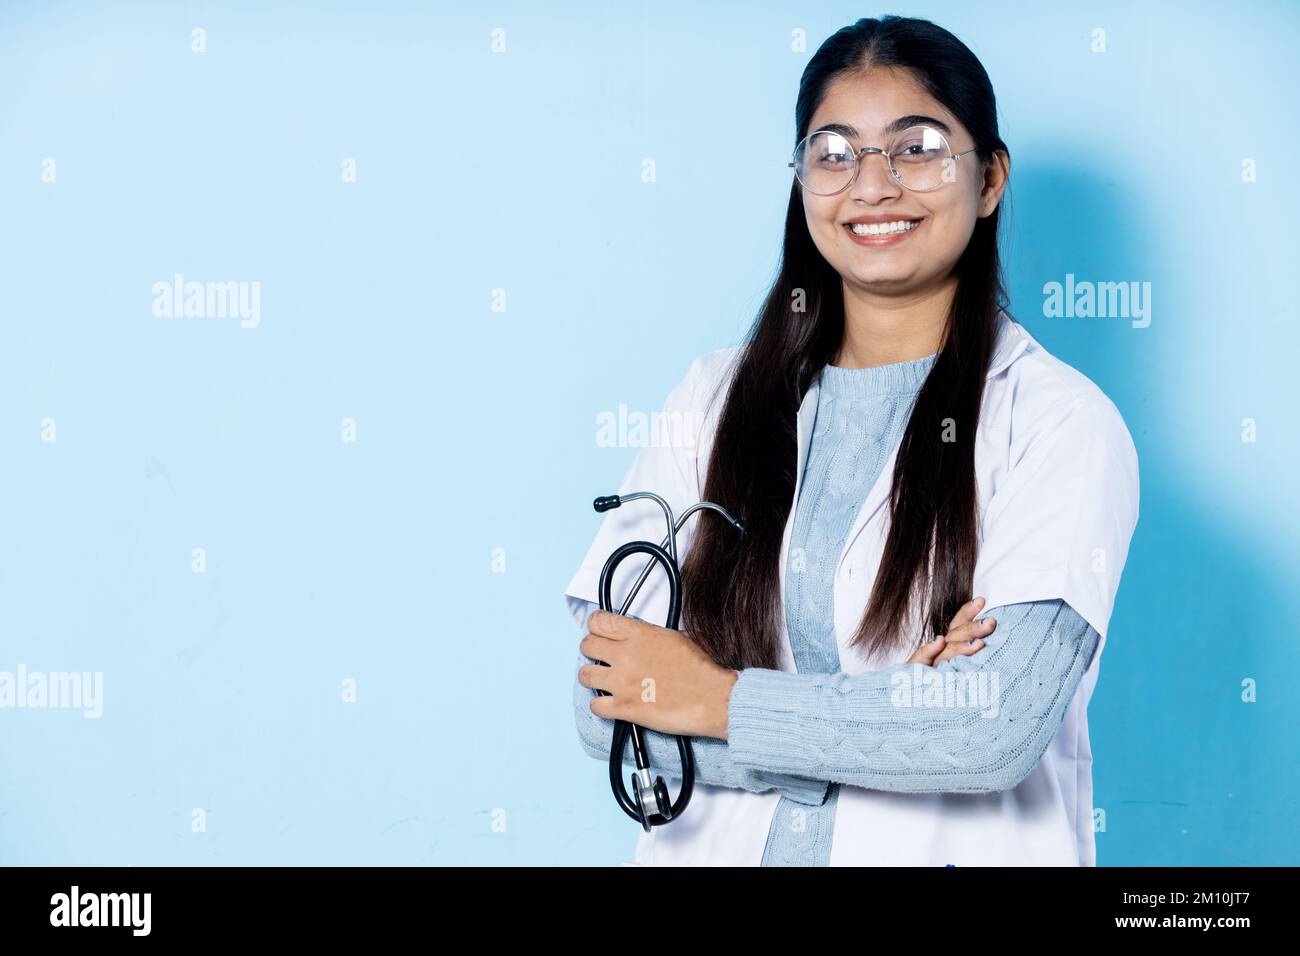 portrait de la jeune étudiante en médecine féminine Banque D'Images